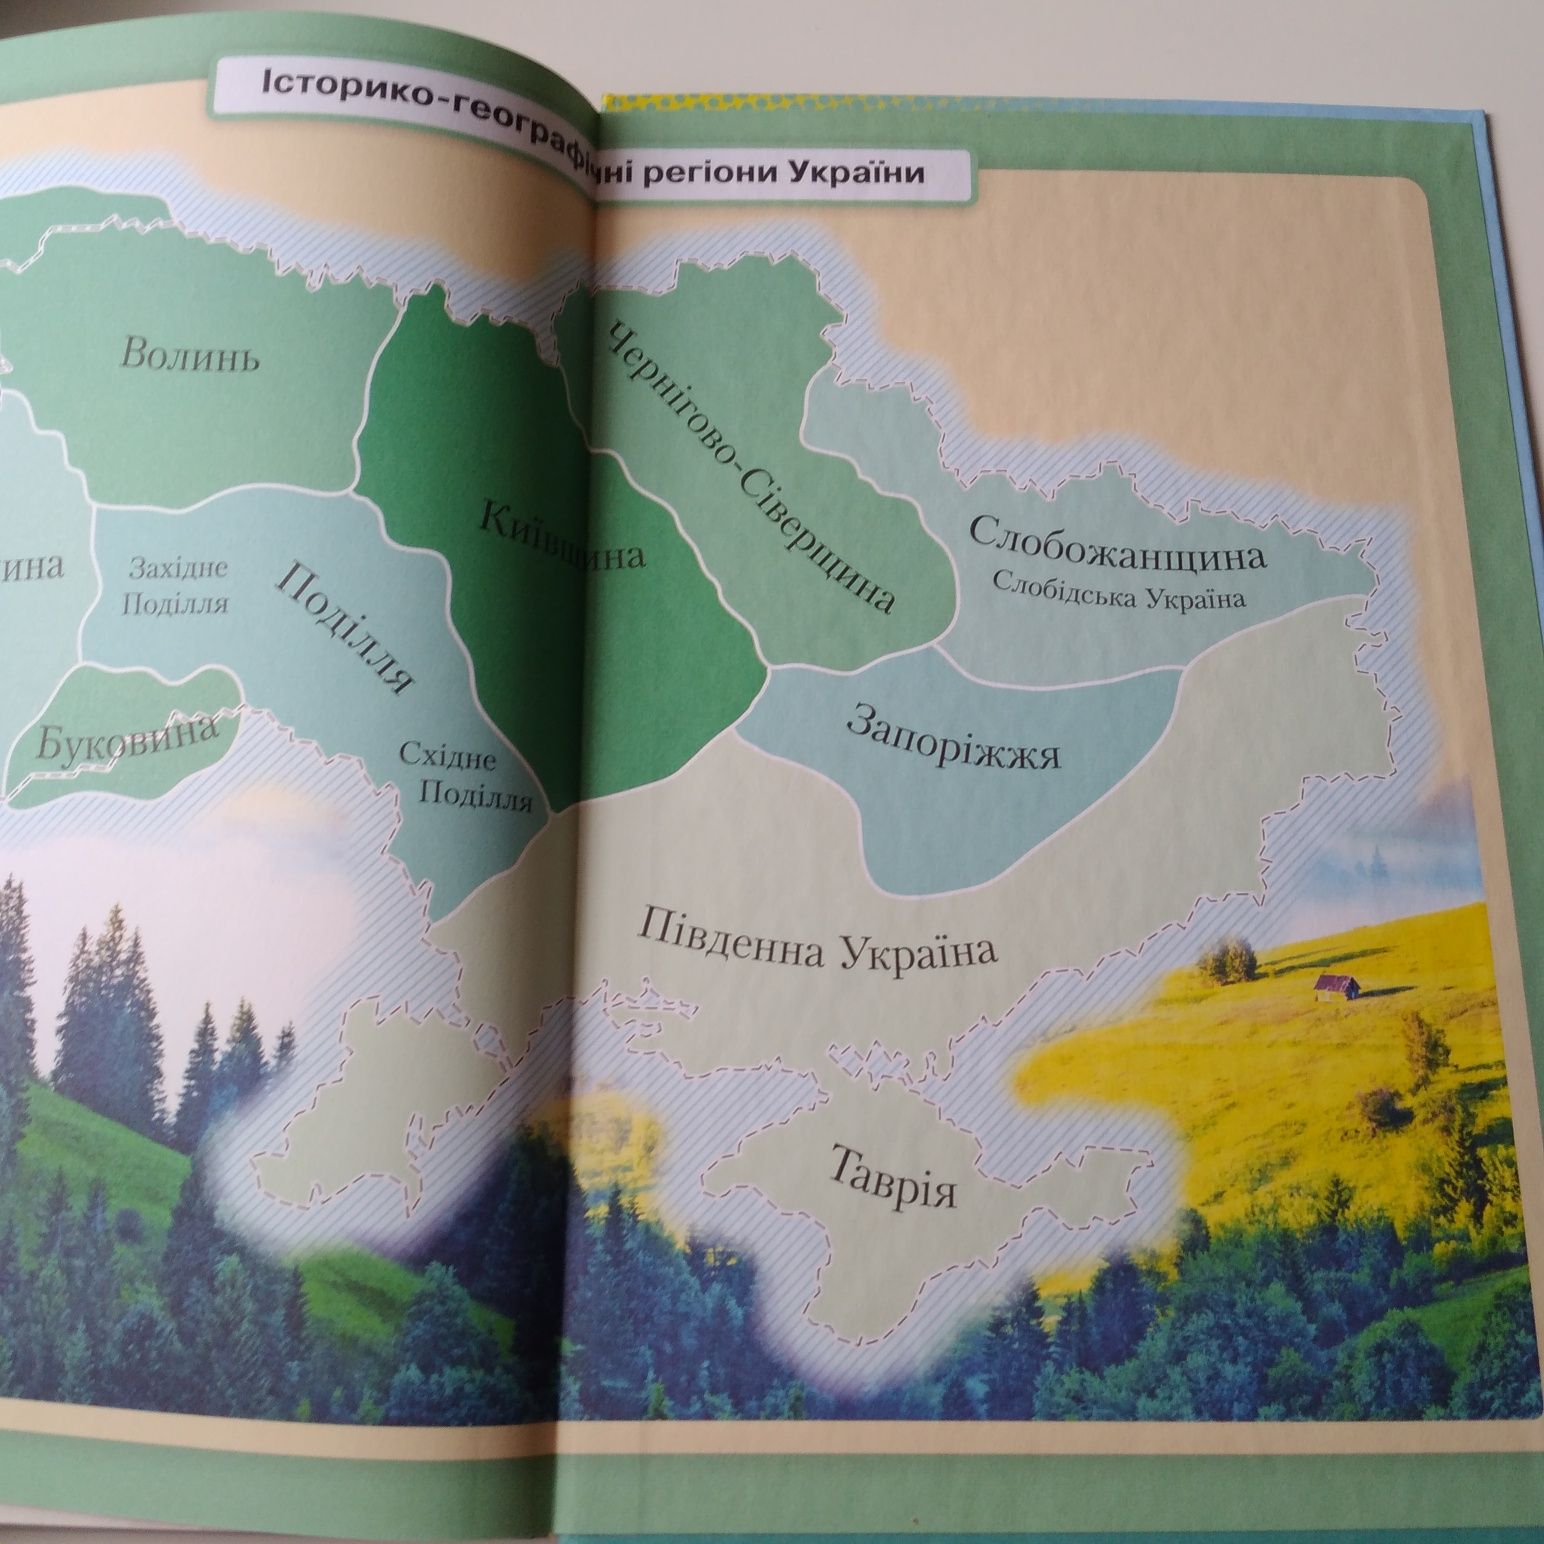 Історія України, 7 клас, підручник 7 клас